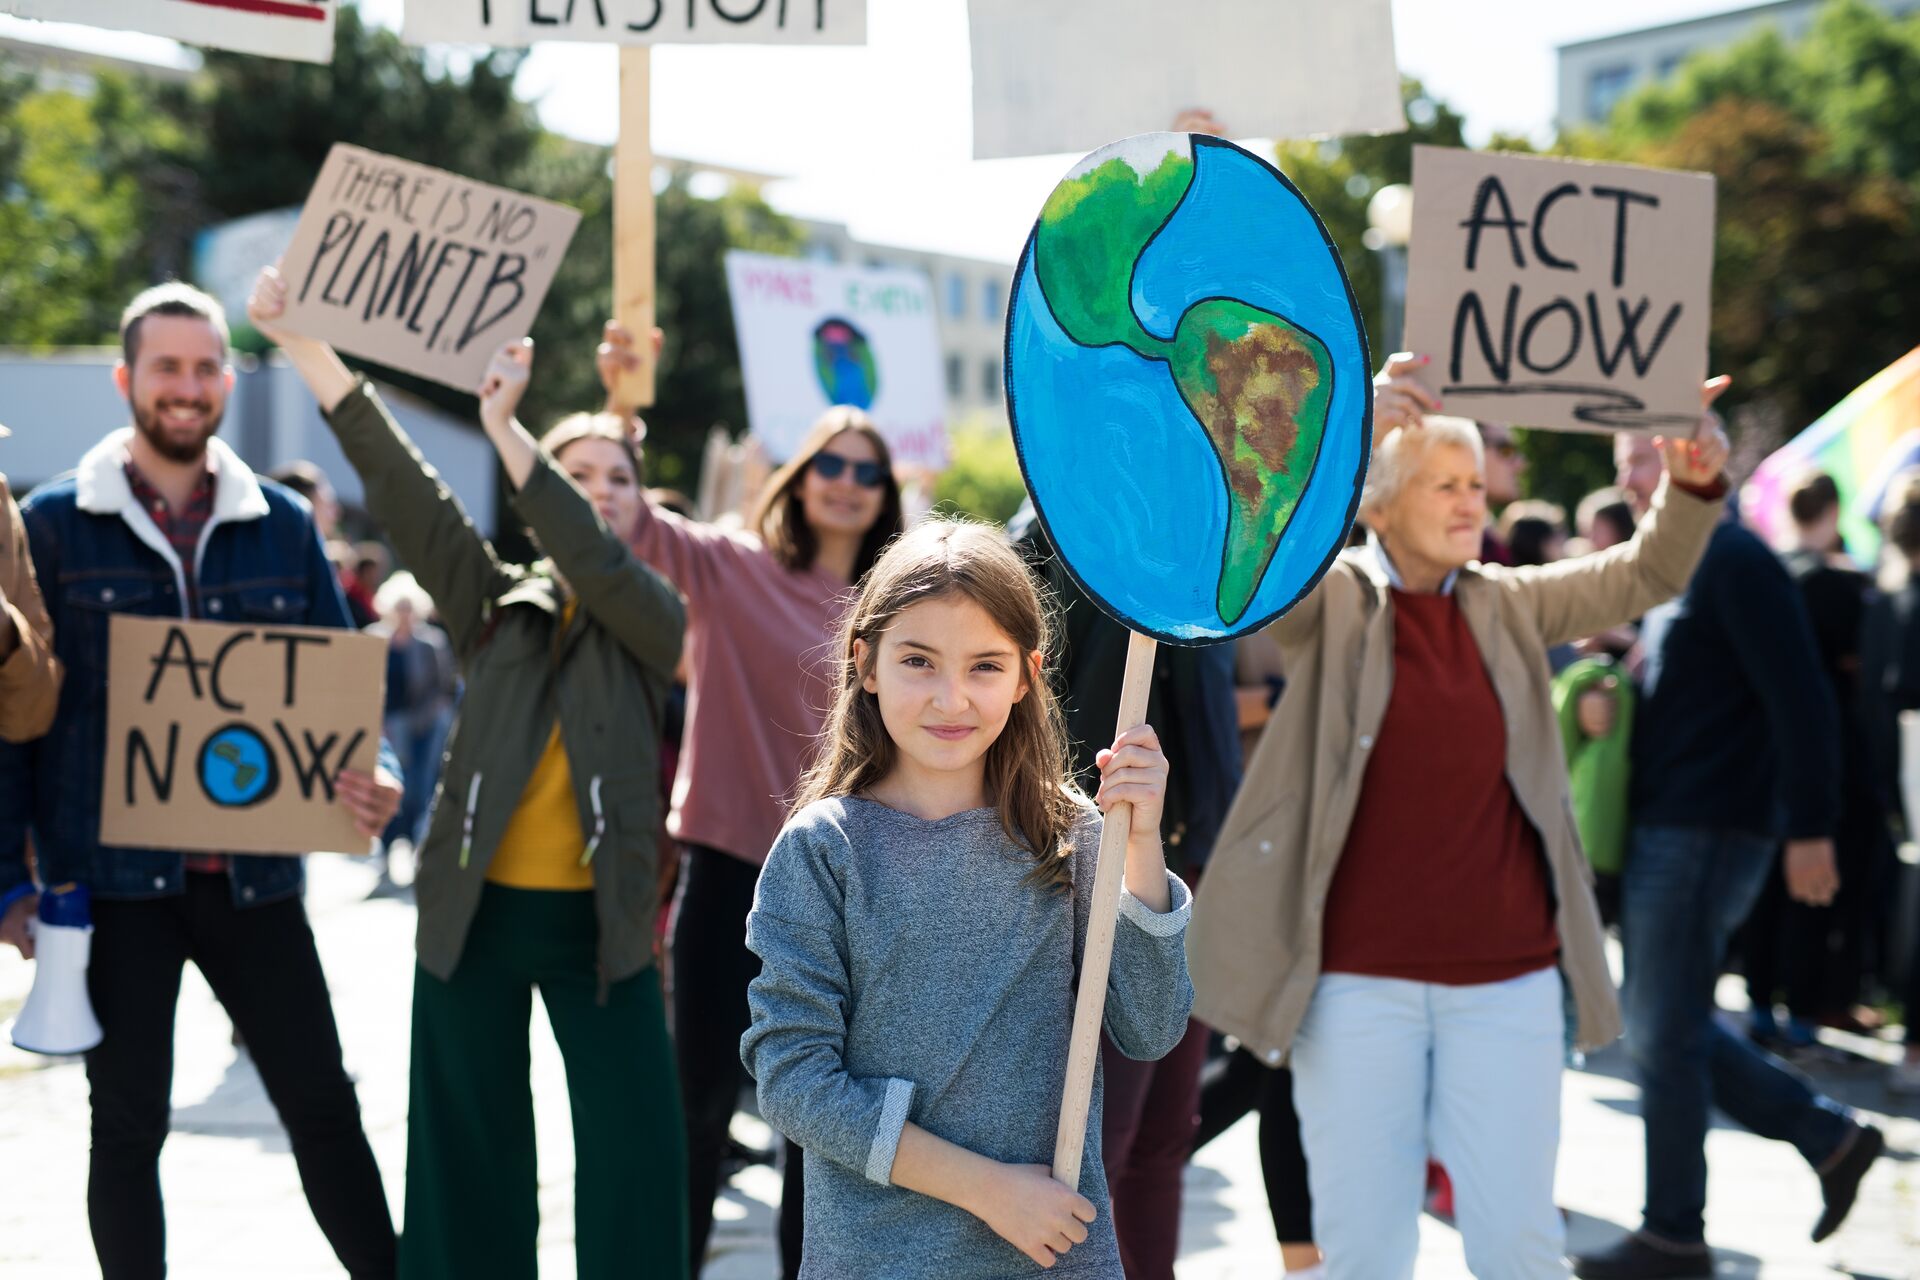 Cambiamento climatico: gli attivisti chiedono interventi rapidissimi